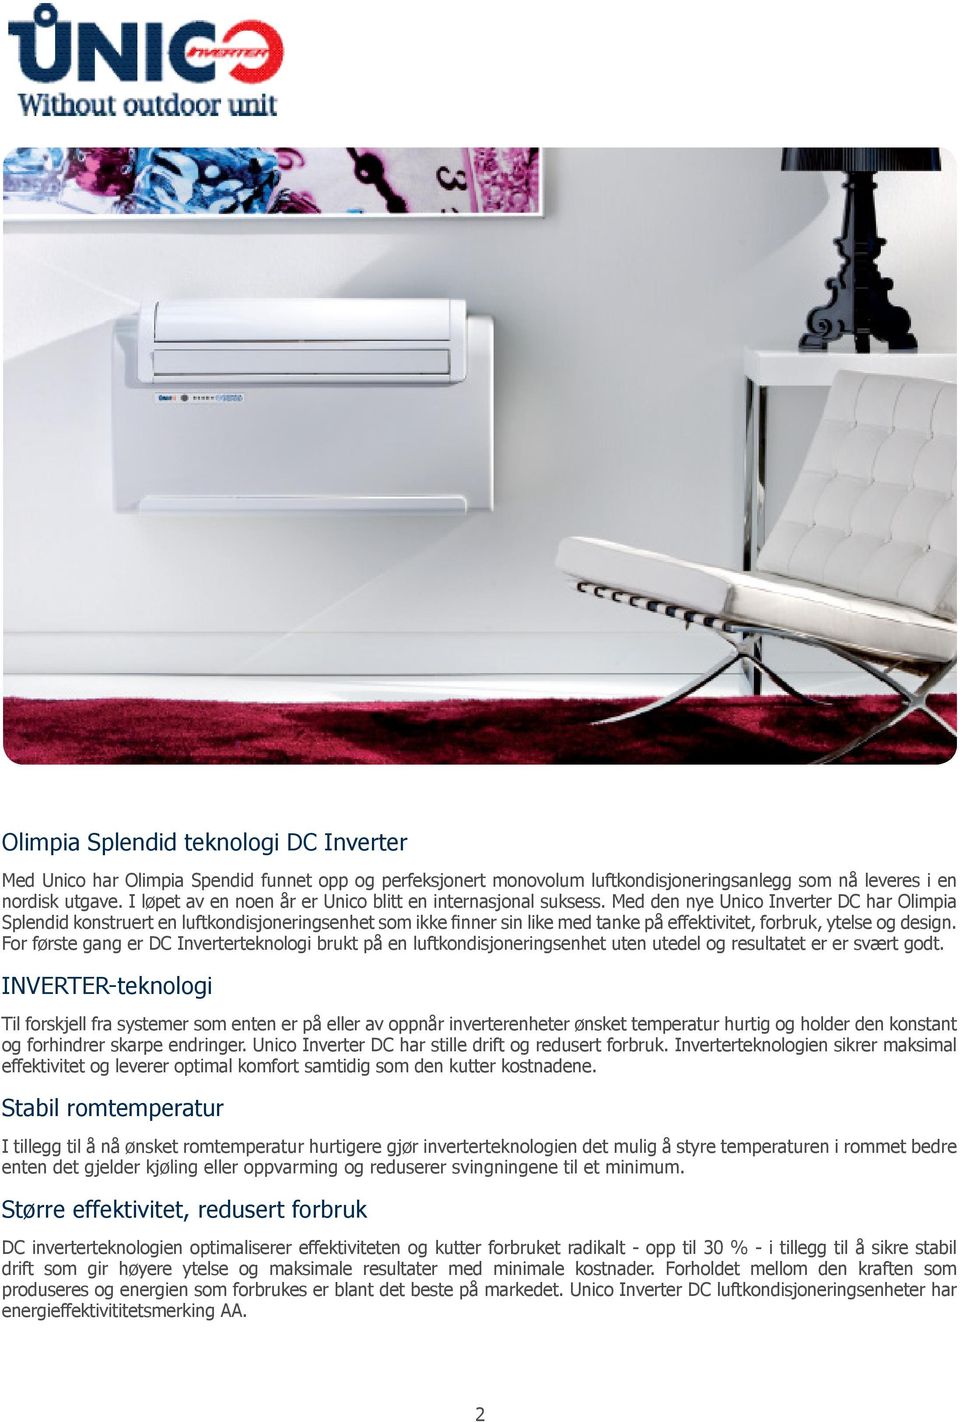 Med den nye Unico Inverter DC har Olimpia Splendid konstruert en luftkondisjoneringsenhet som ikke finner sin like med tanke på effektivitet, forbruk, ytelse og design.